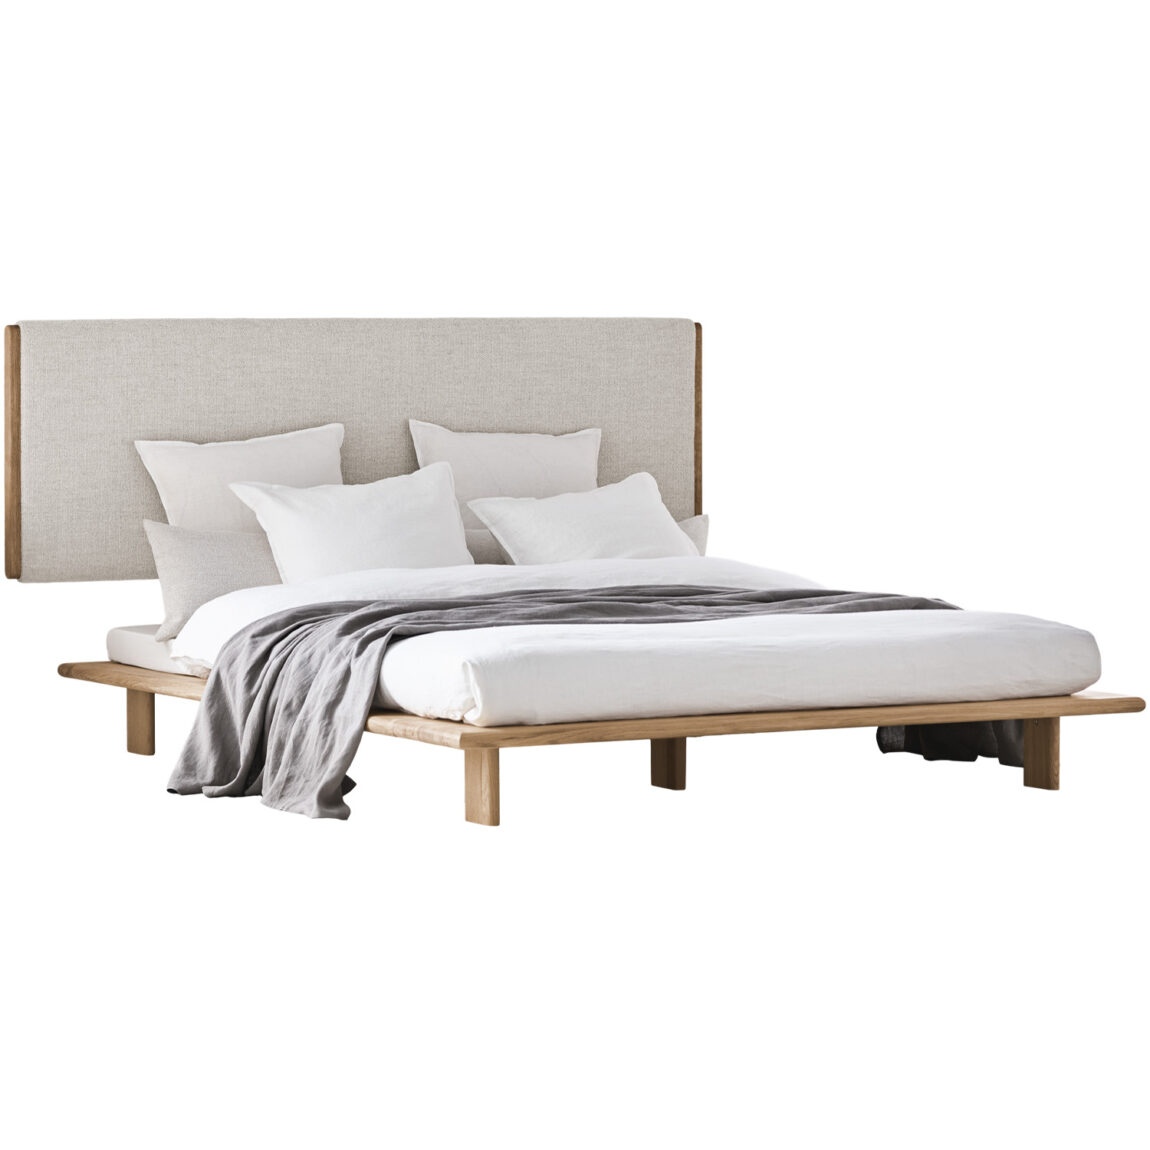 Bolia designové postele Haven Bed (pro matraci